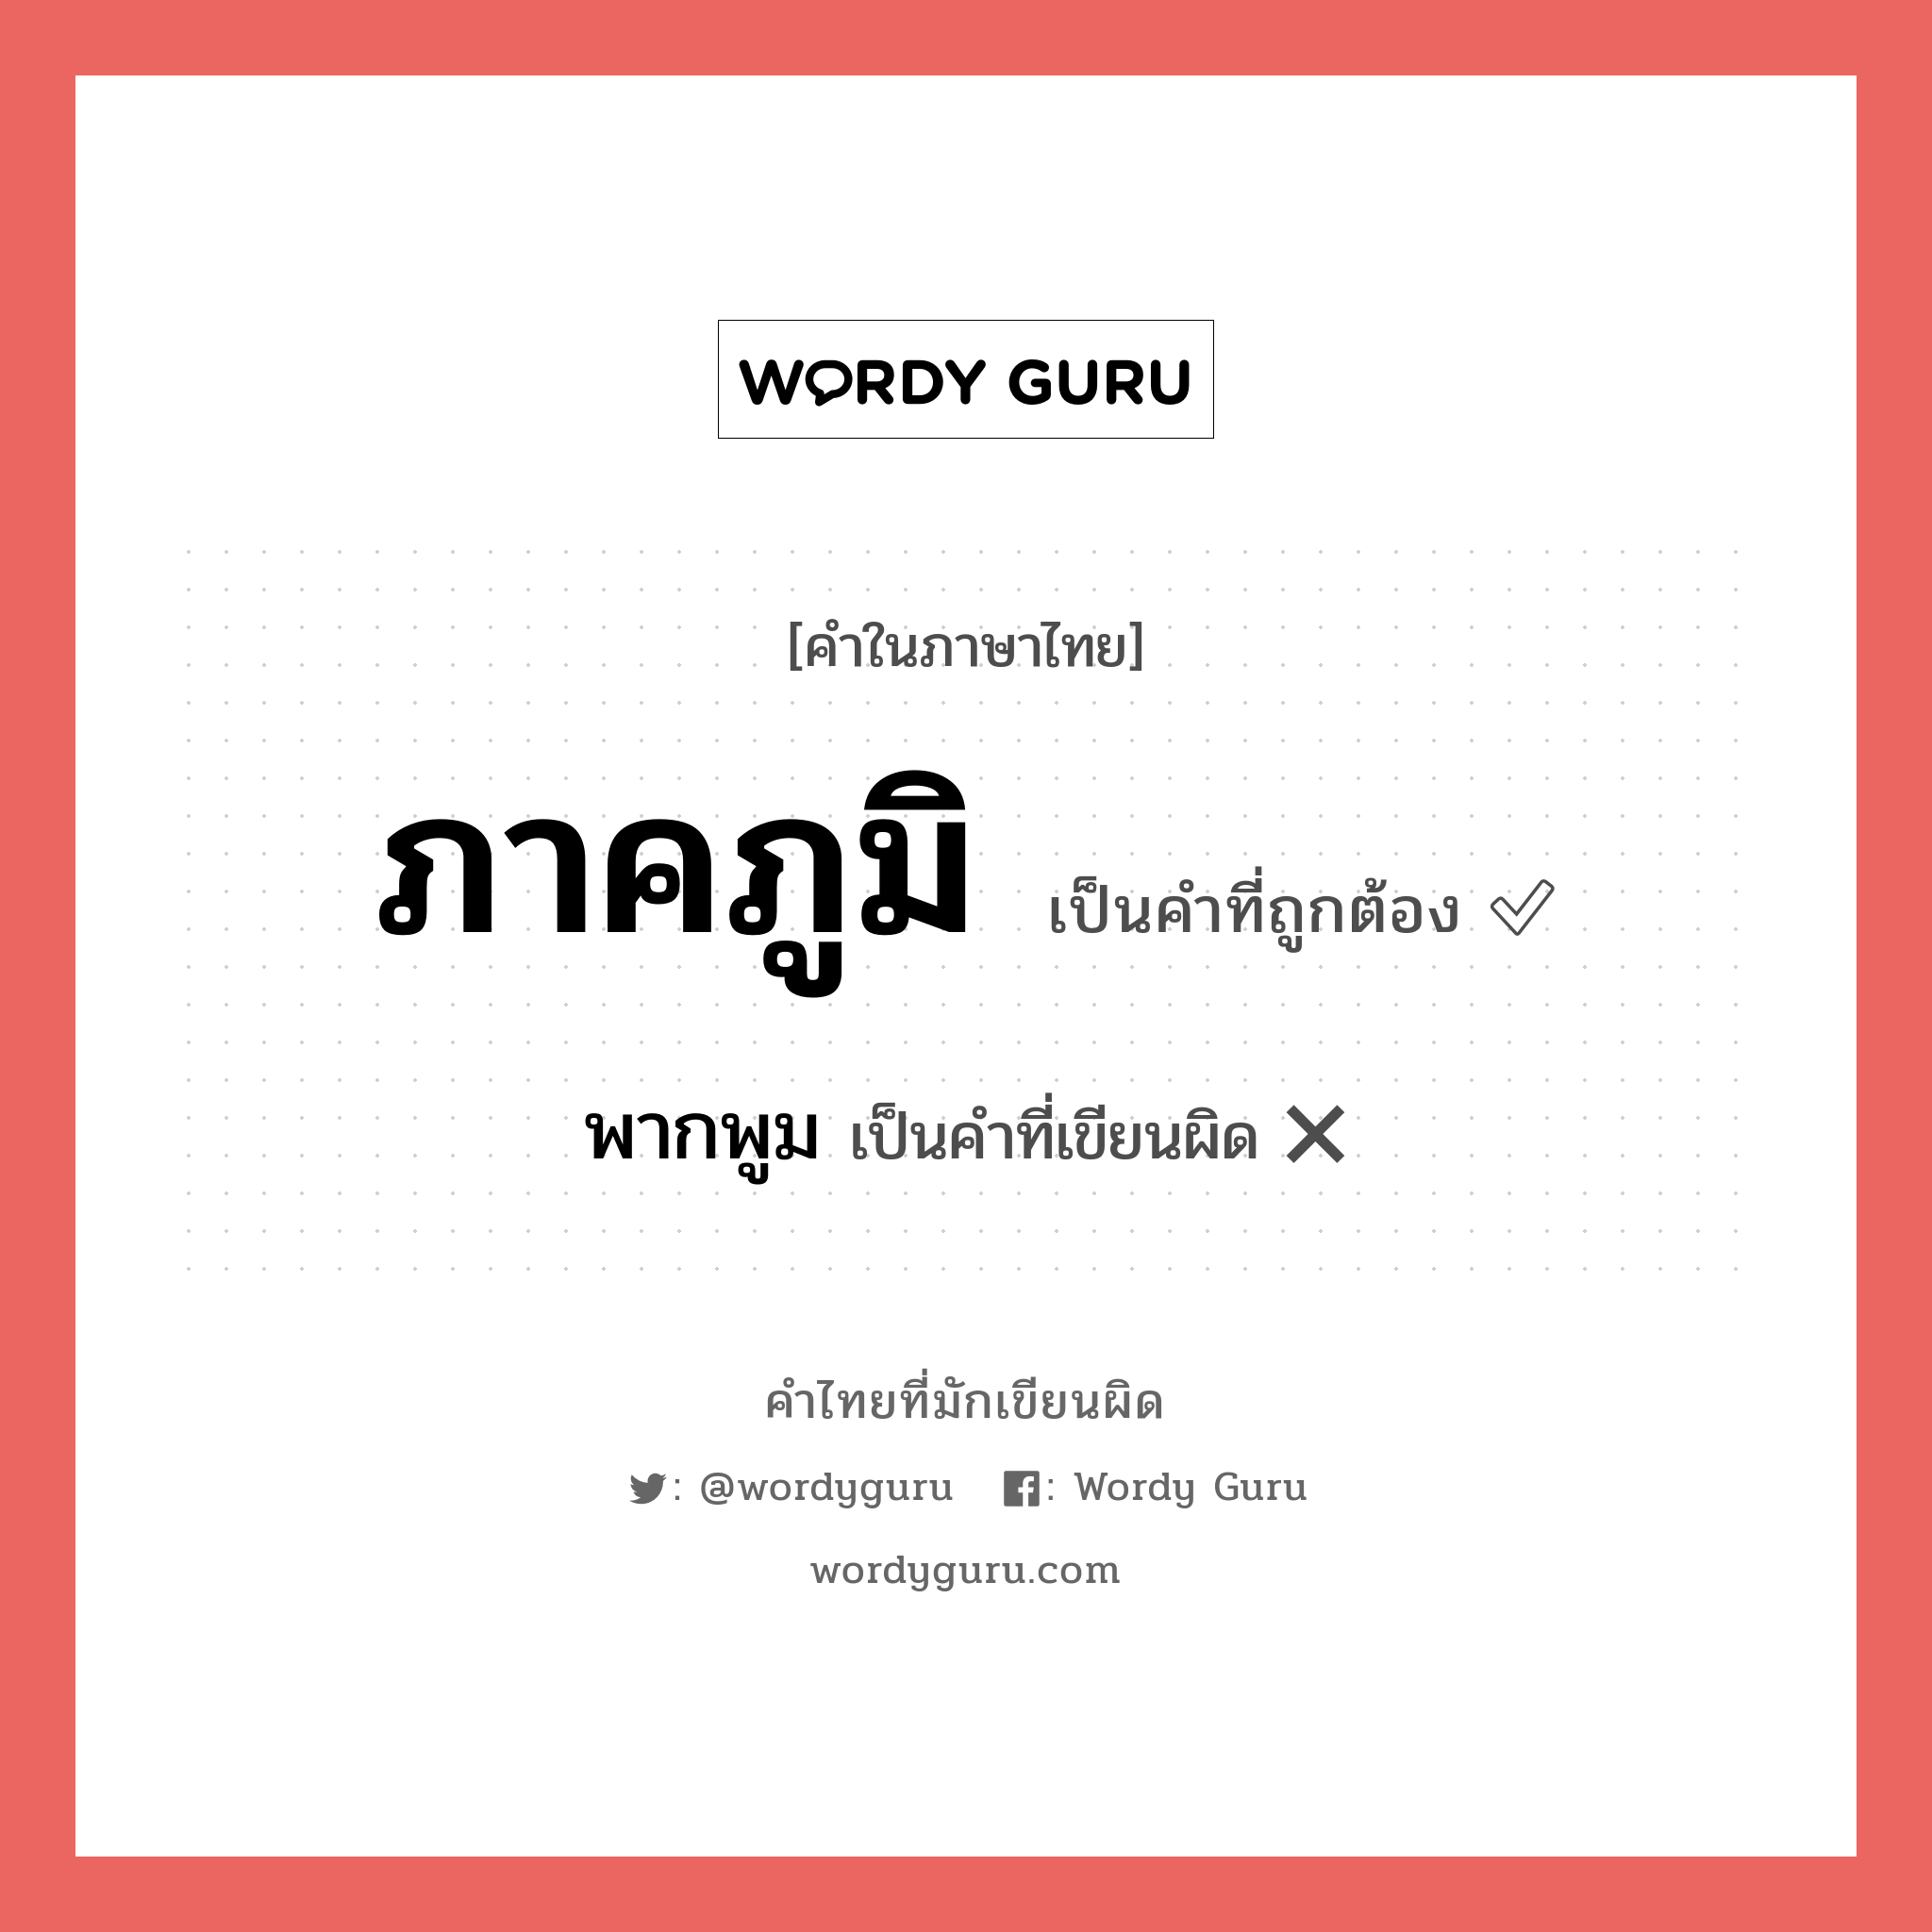 พากพูม หรือ ภาคภูมิ คำไหนเขียนถูก?, คำในภาษาไทยที่มักเขียนผิด พากพูม คำที่ผิด ❌ ภาคภูมิ